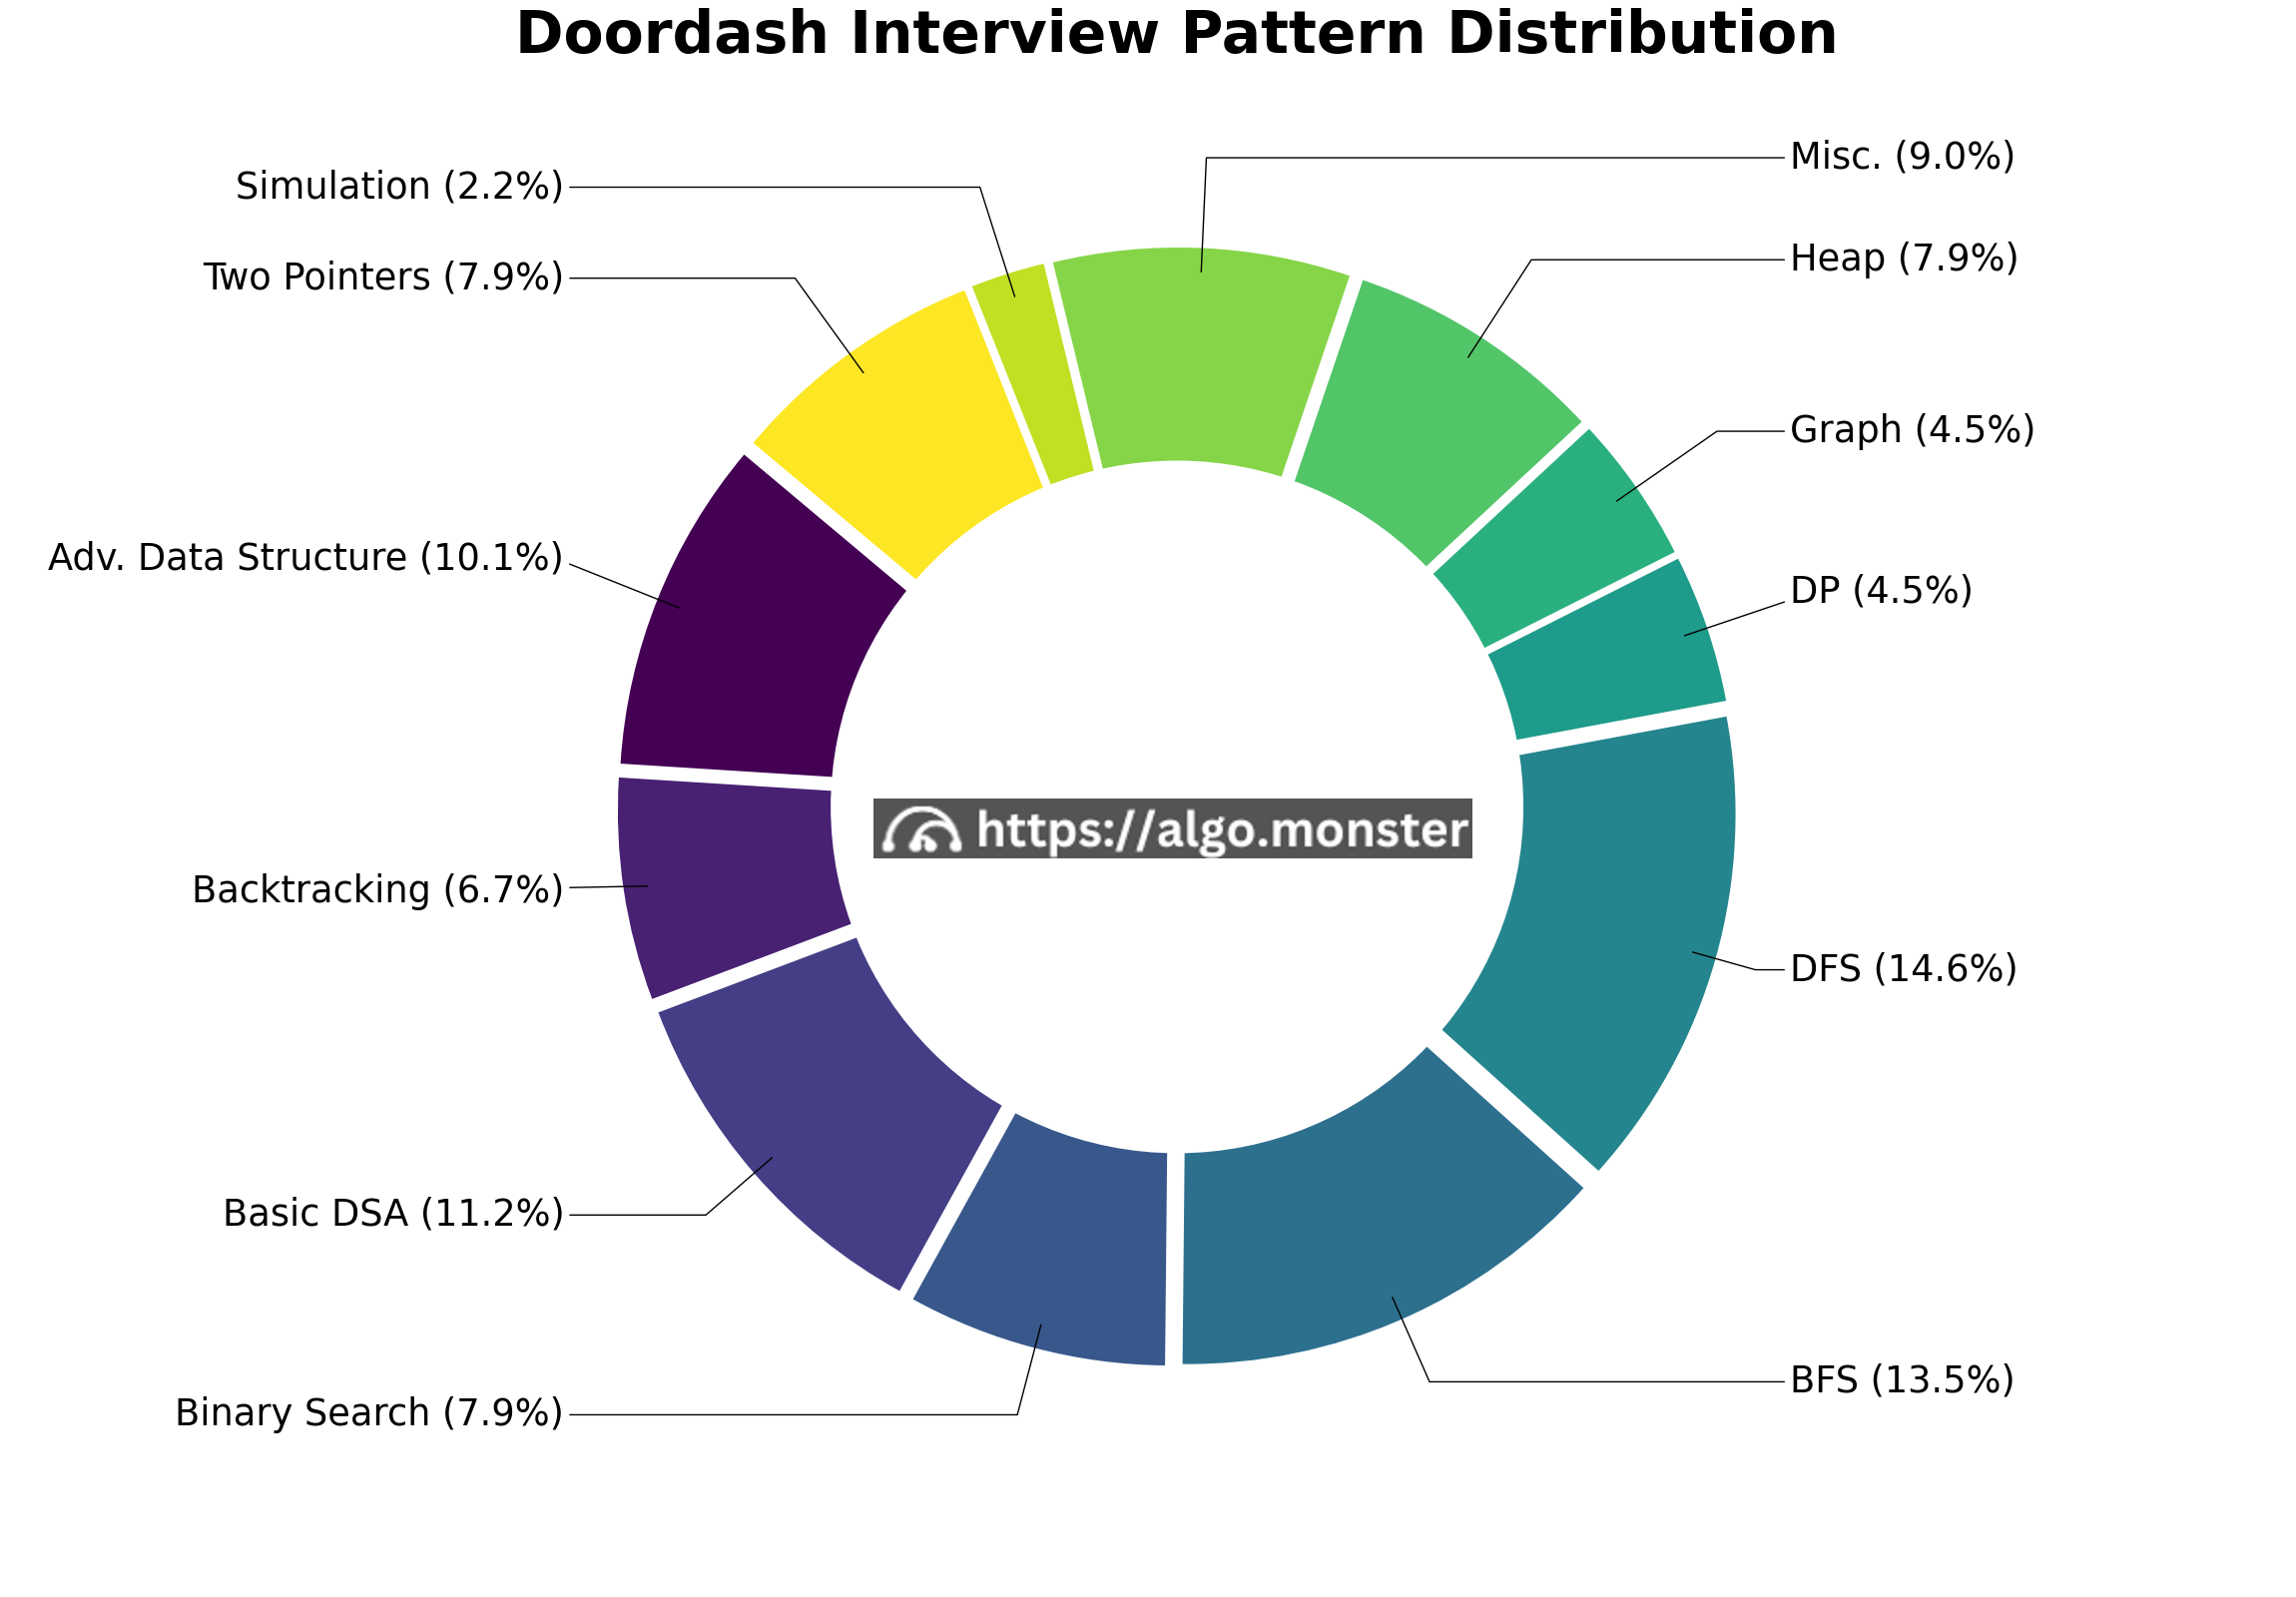 Doordash interview questions breakdown